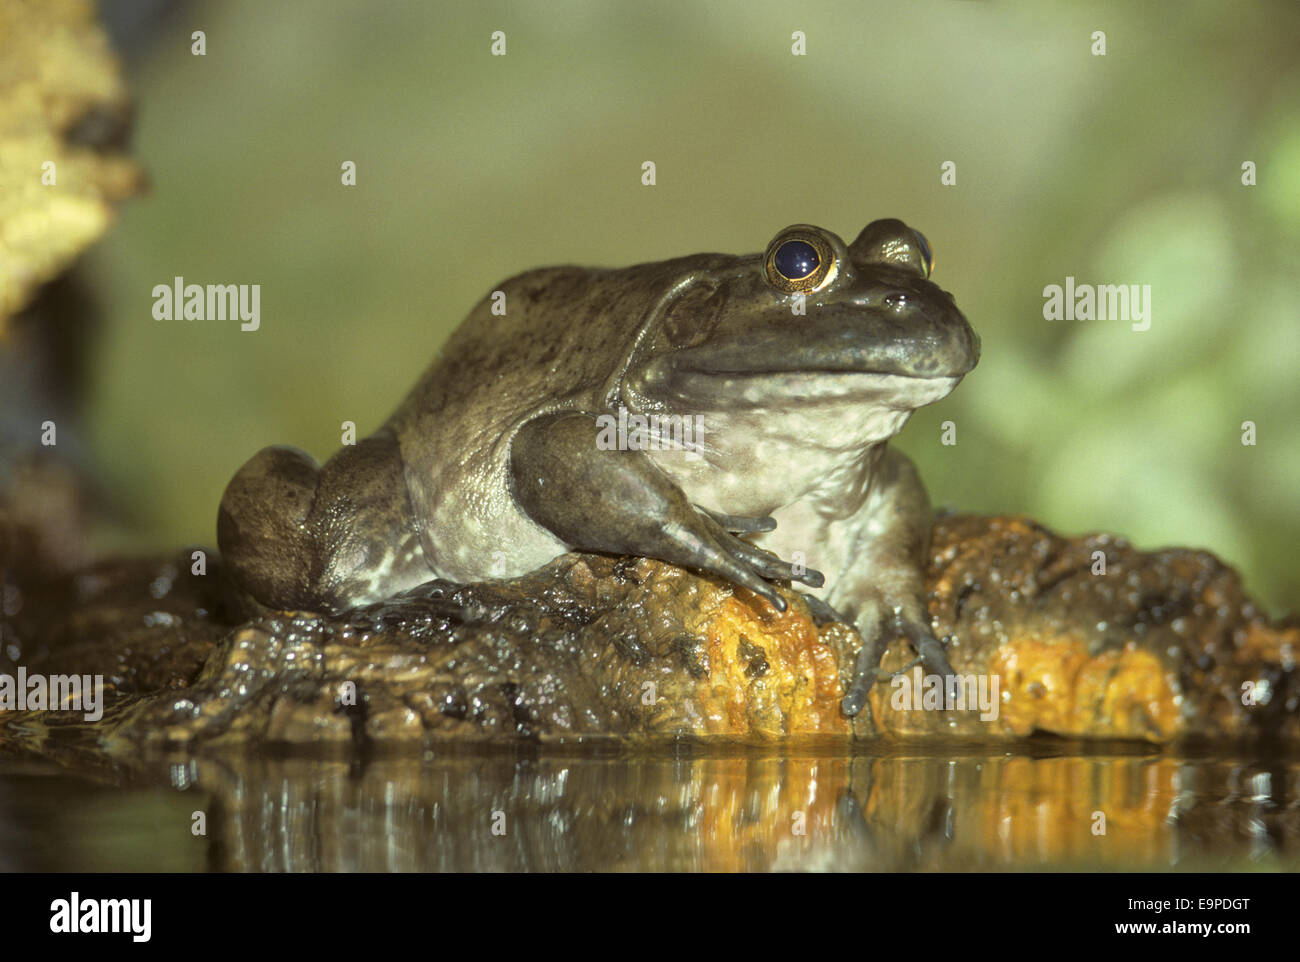 North American Bullfrog - Rana catesbeiana Stock Photo